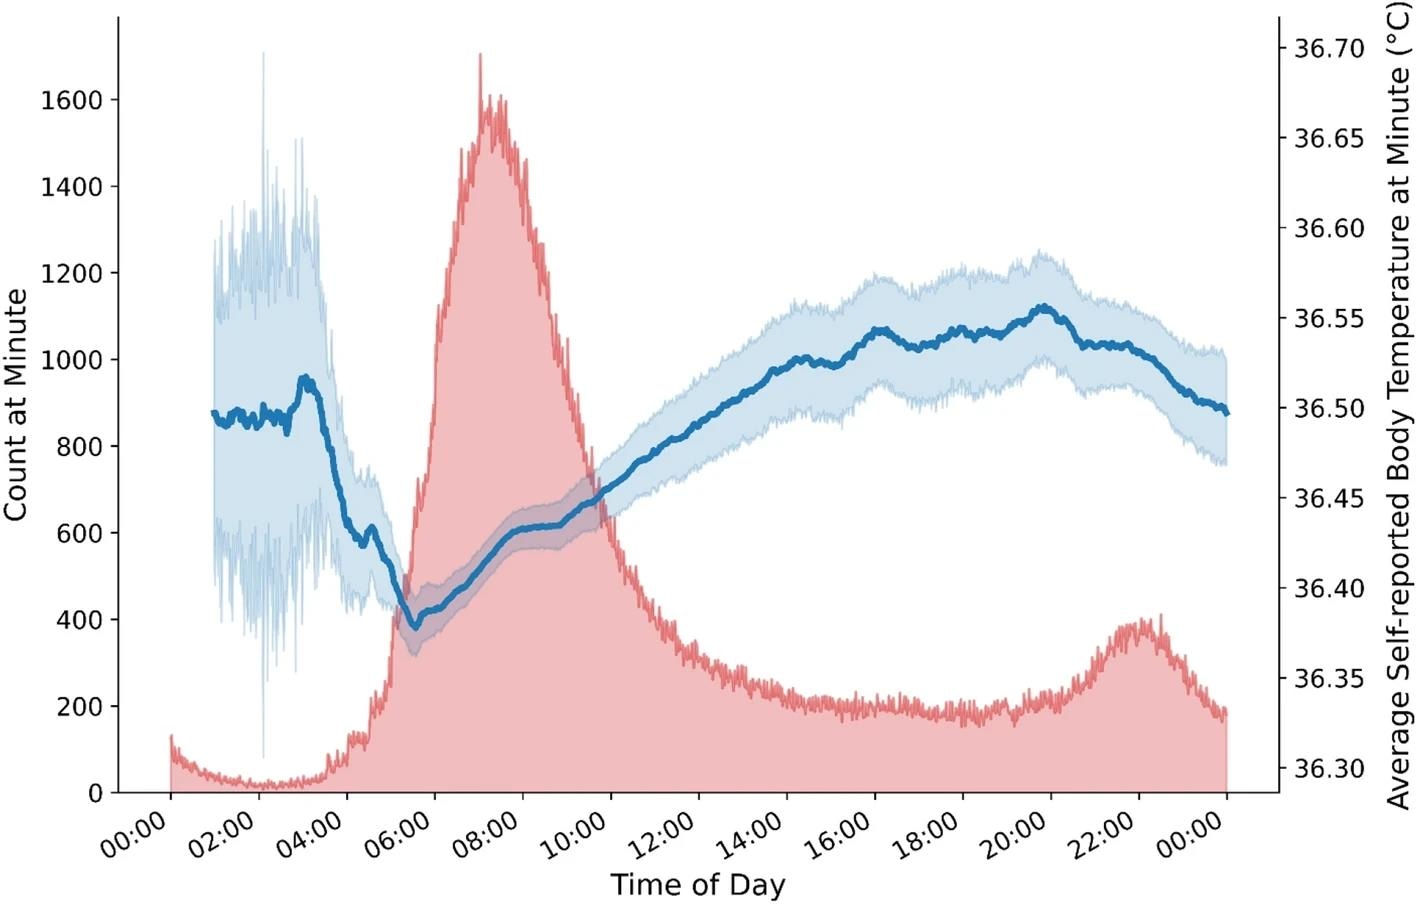 Température corporelle moyenne autodéclarée selon l'heure de la journée.  La figure montre le schéma diurne attendu des températures corporelles autodéclarées les plus basses tôt le matin et des températures corporelles autodéclarées plus élevées pendant les heures de clarté.  Note.  La ligne bleue montre la température corporelle moyenne autodéclarée (axe Y de droite) par heure de la journée ;  L’ombrage bleu indique l’erreur type de la moyenne.  L'ombrage rouge indique le nombre de réponses fournies par minute (axe Y de gauche) (axe X).